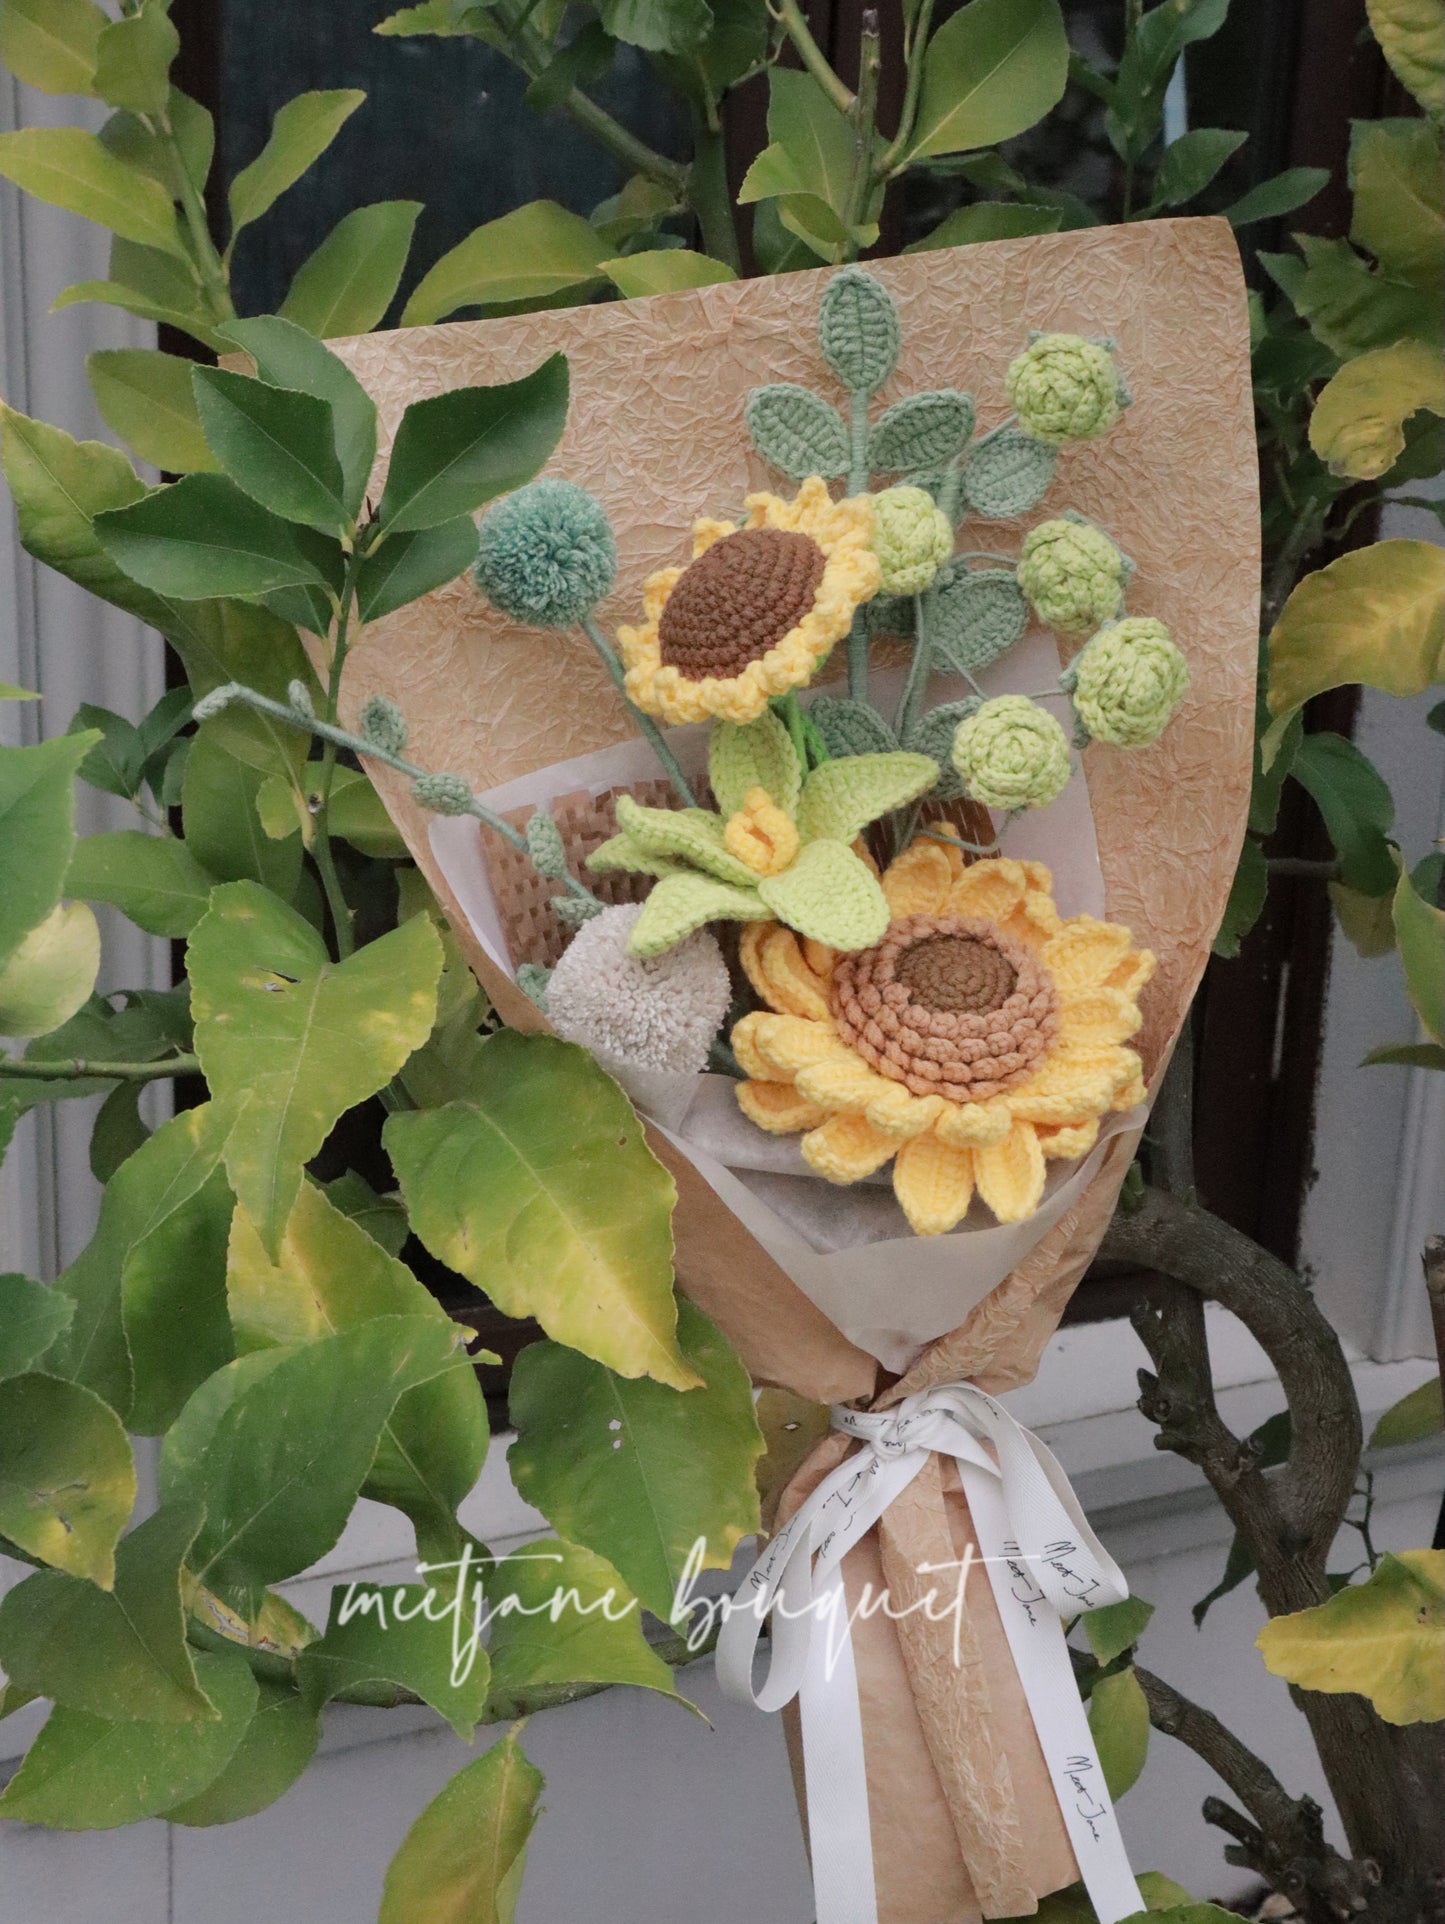 Meetjane Bouquet|Melbourne handmade |Graduation gift|Sunflower